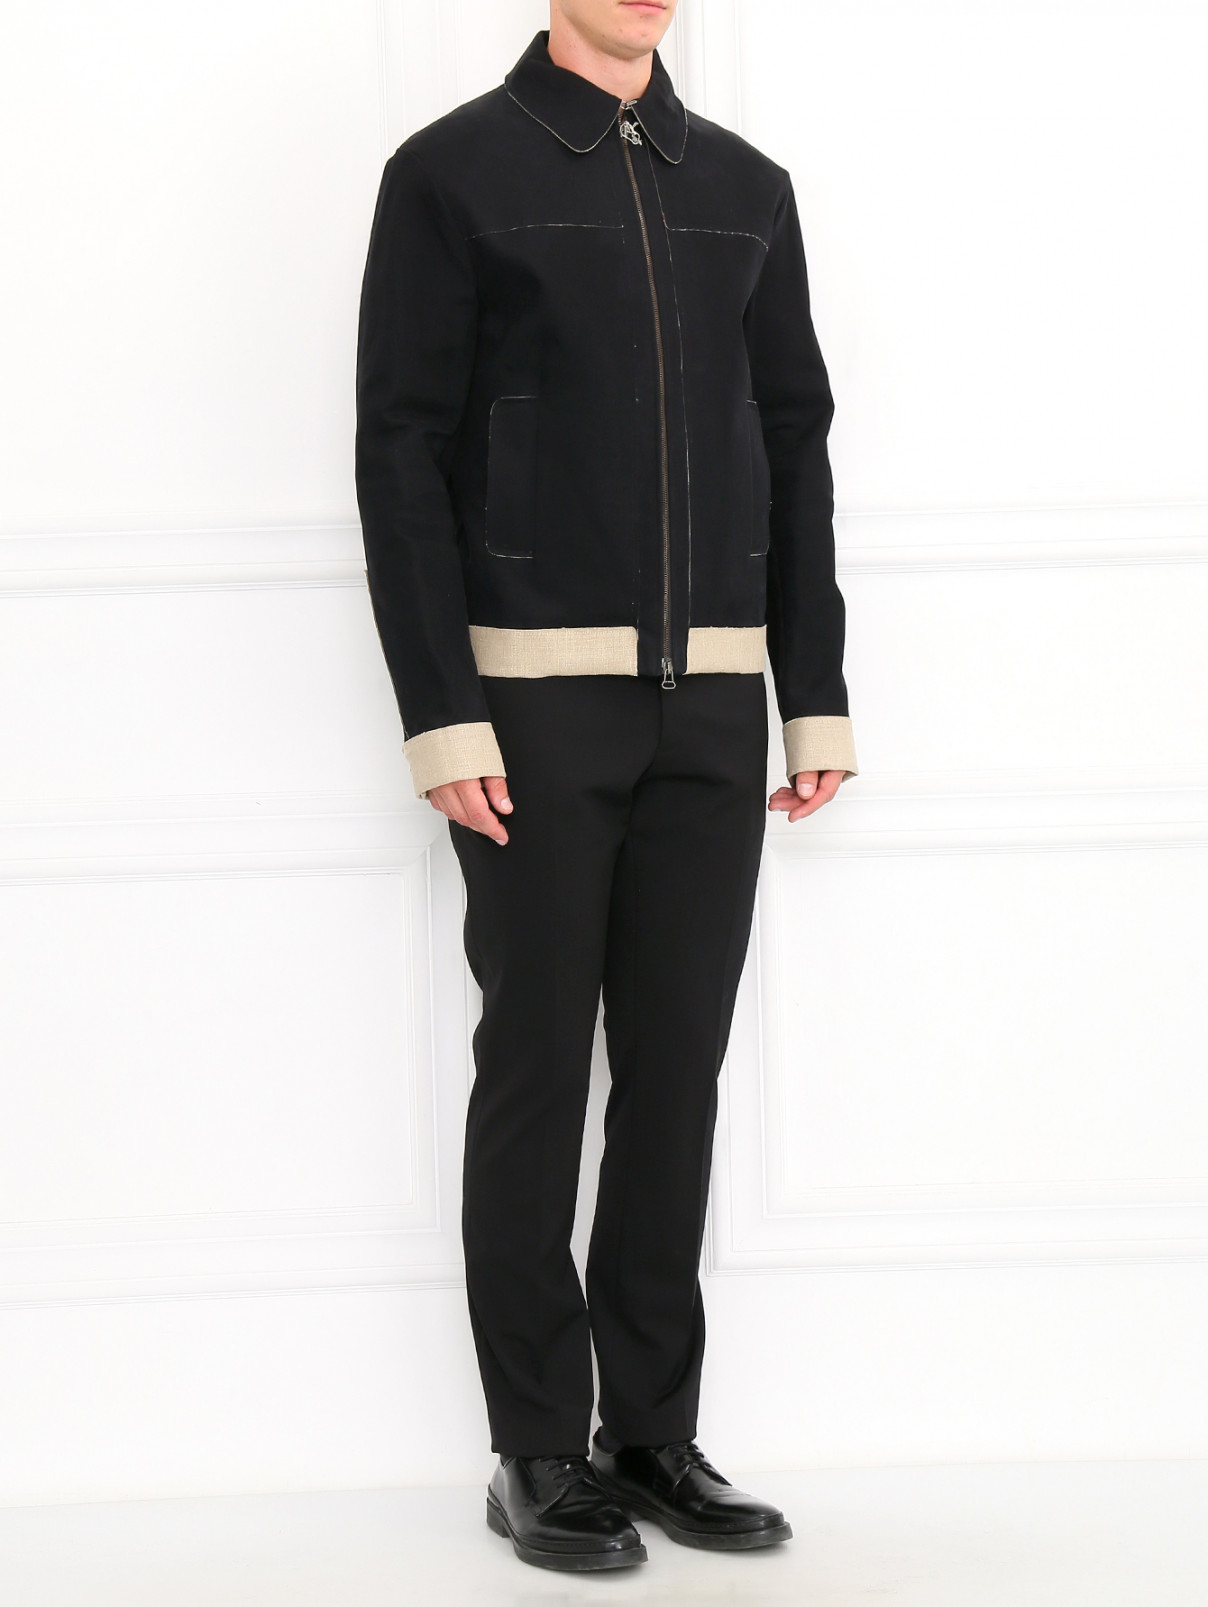 Куртка из шерсти и льна Antonio Marras  –  Модель Общий вид  – Цвет:  Черный